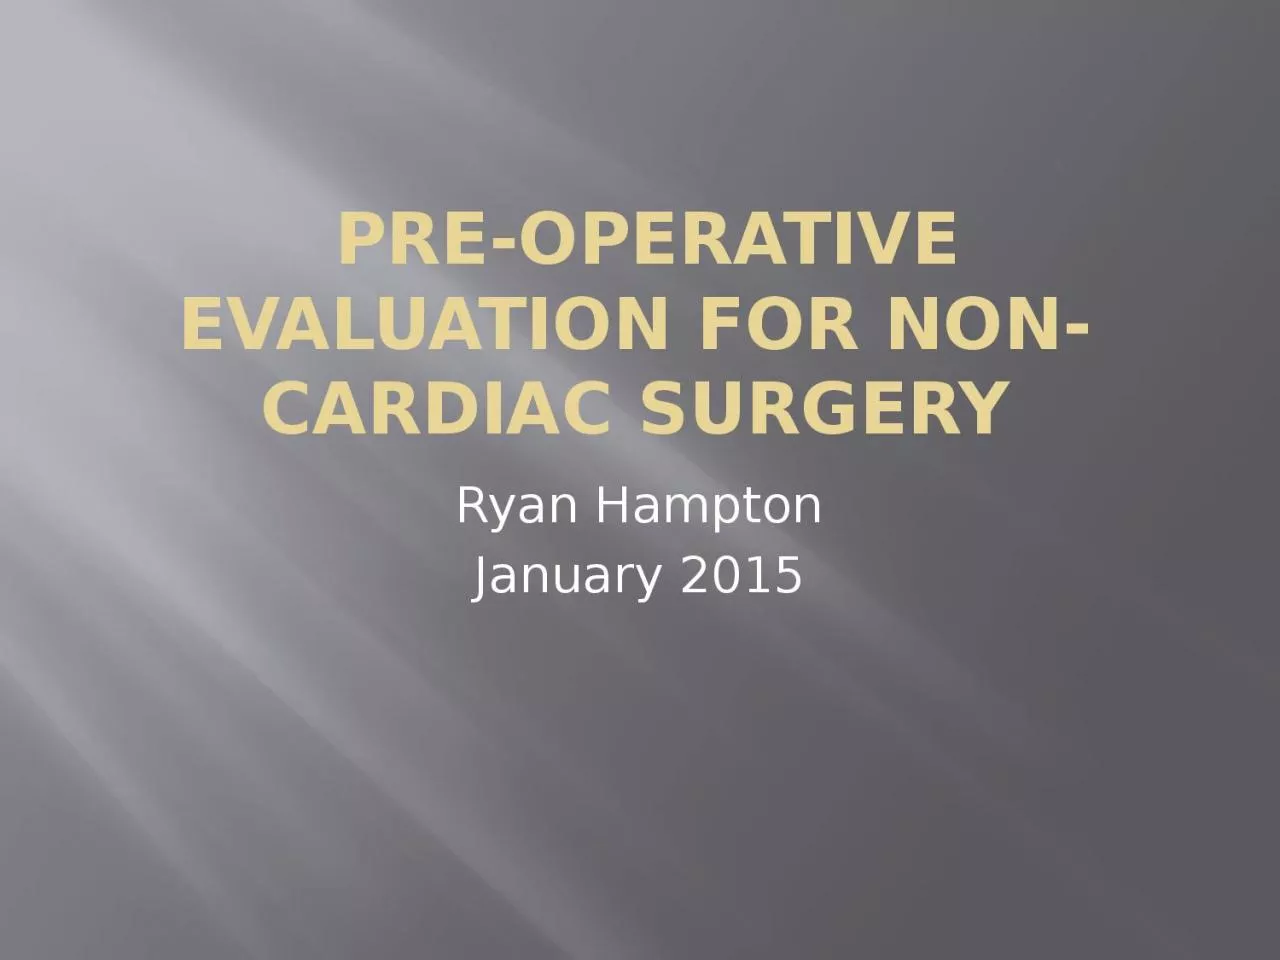 Pre-operative evaluation for non-cardiac surgery